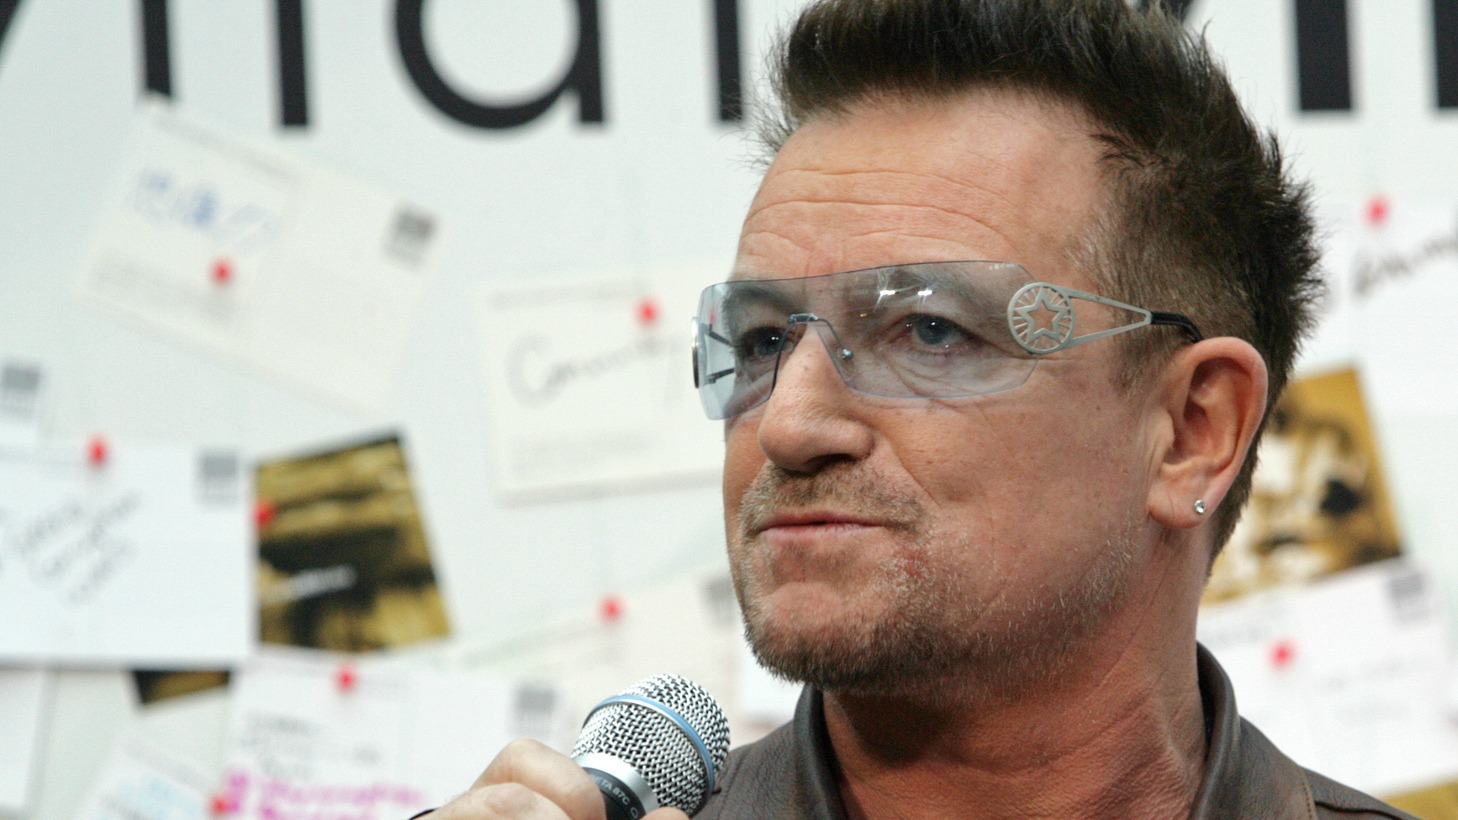 Le chanteur Bono est connu pour ses convictions catholiques (Photo:World Bank/Flickr/CC BY-NC-ND 2.0)